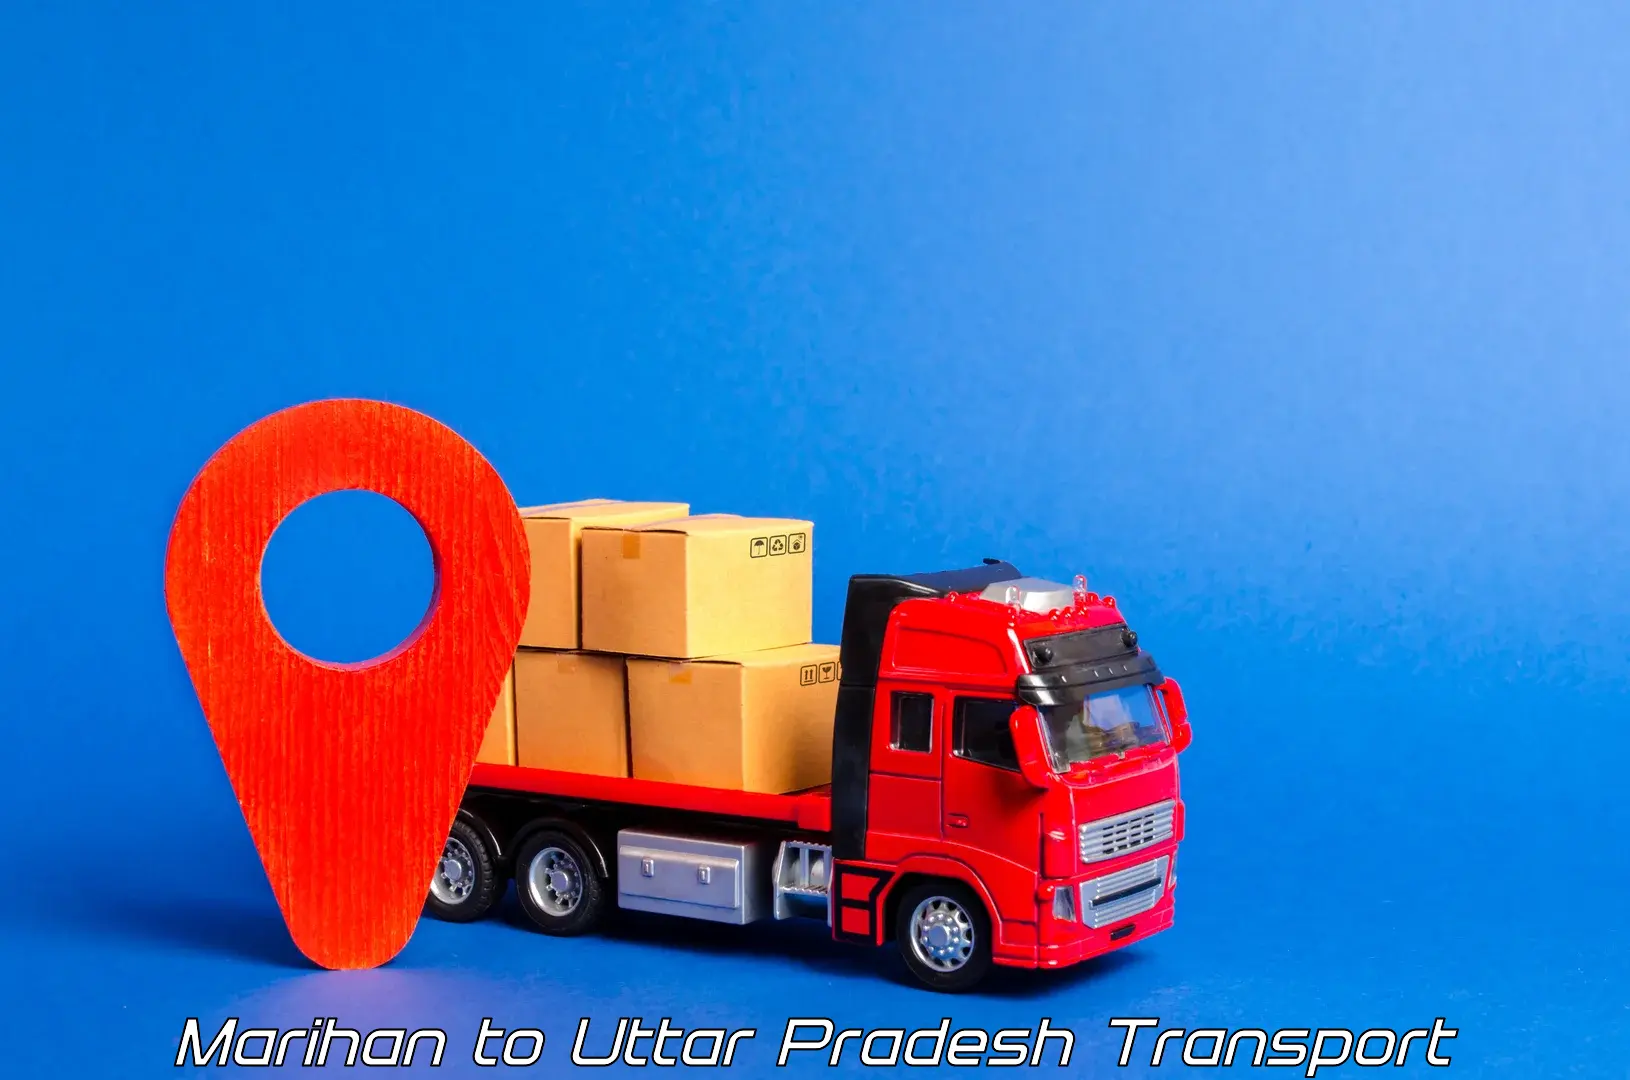 Furniture transport service Marihan to Dildar Nagar